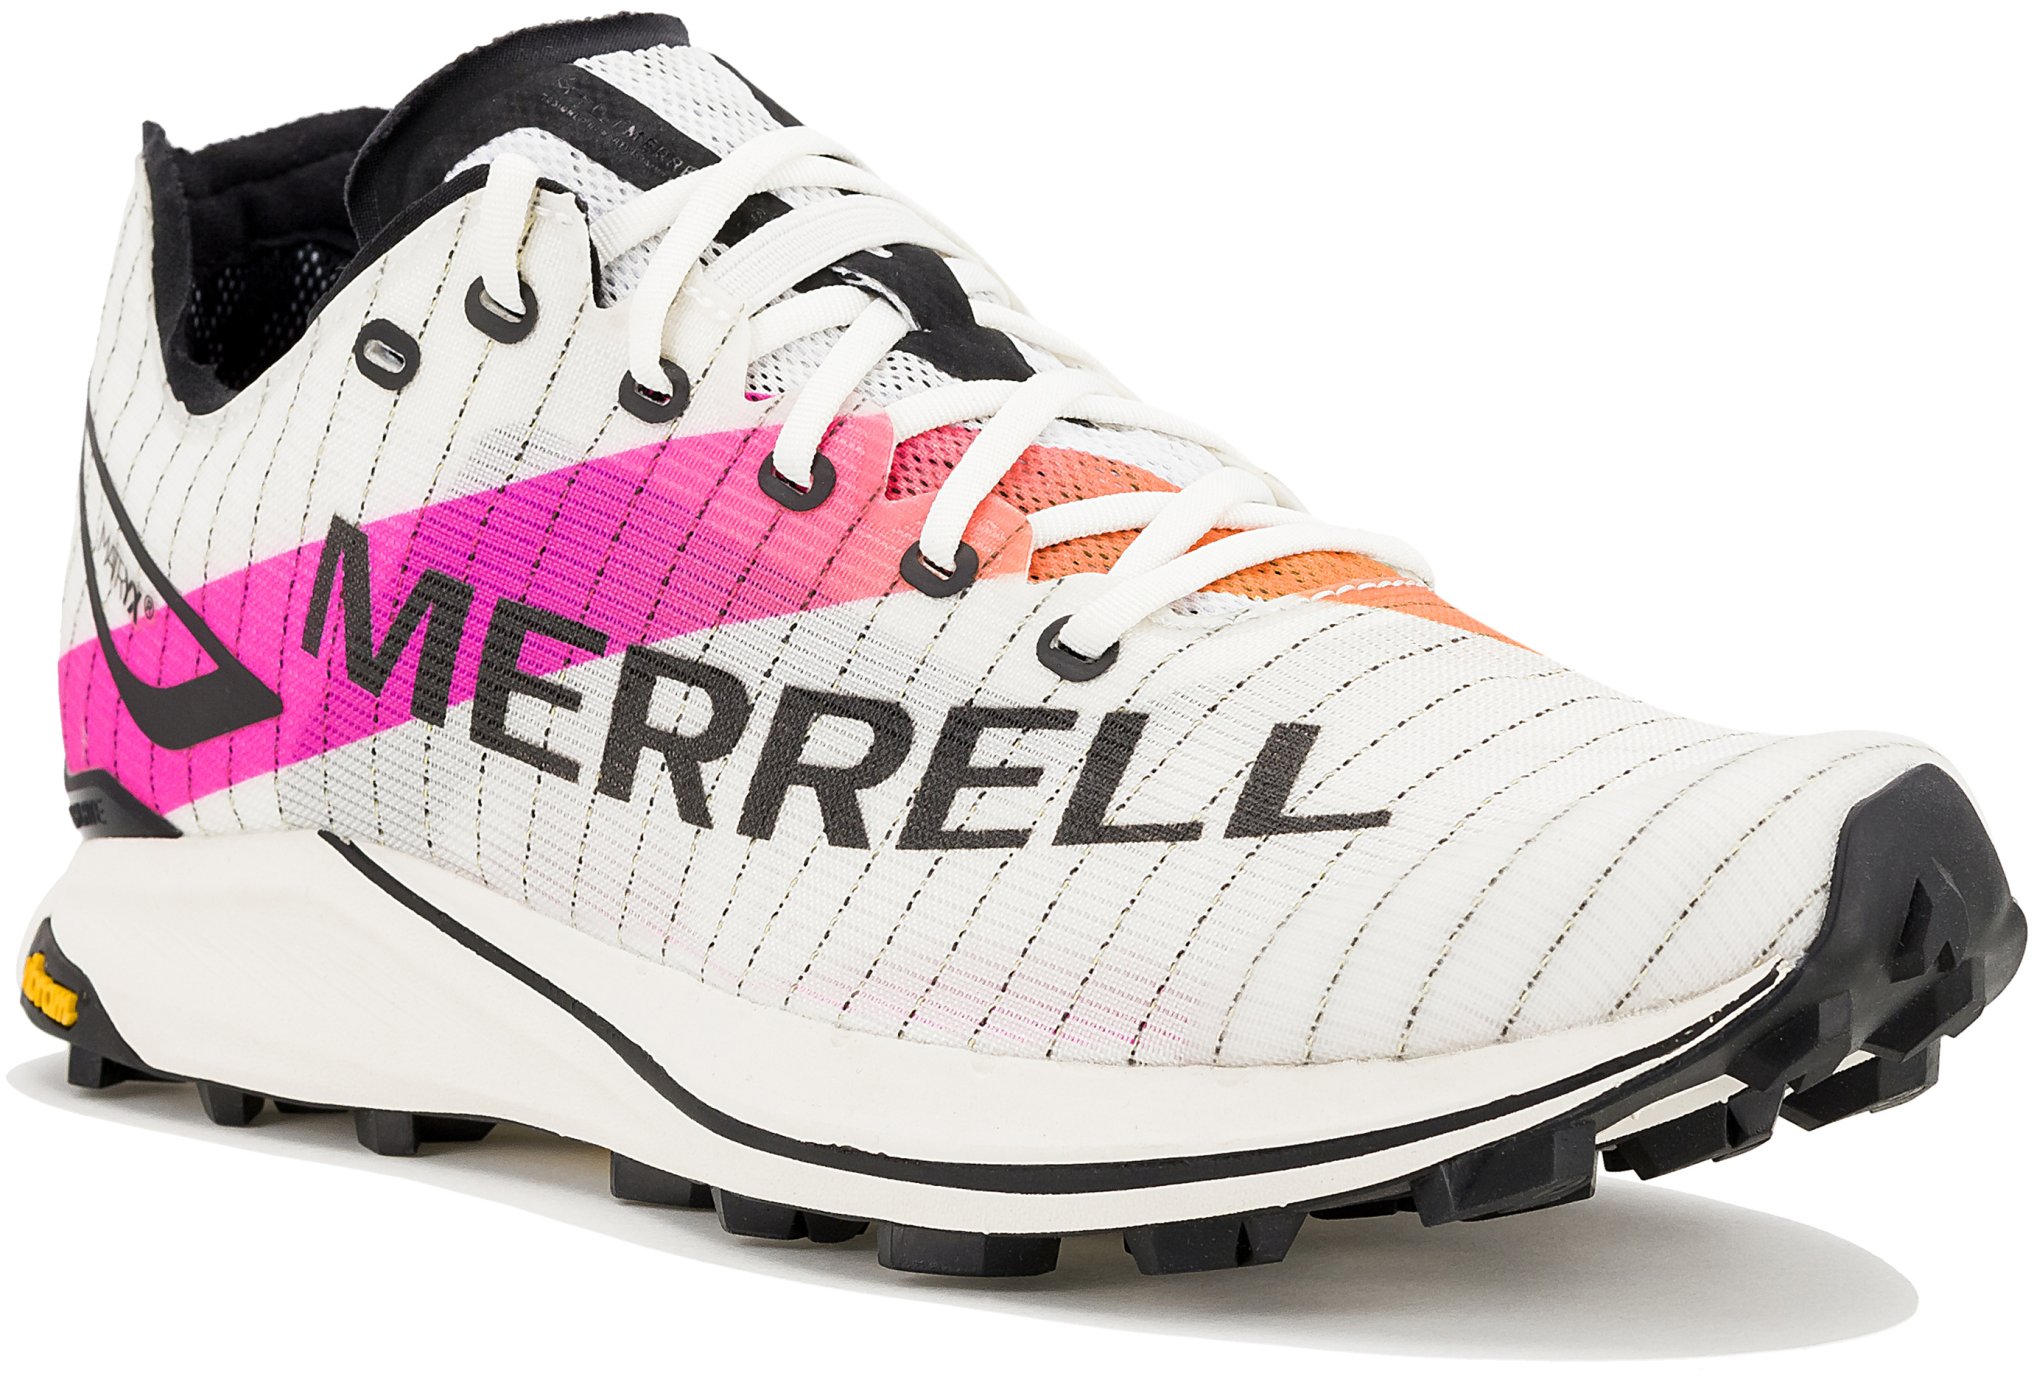 Merrell MTL Skyfire 2 Matryx W Chaussures de sport femme